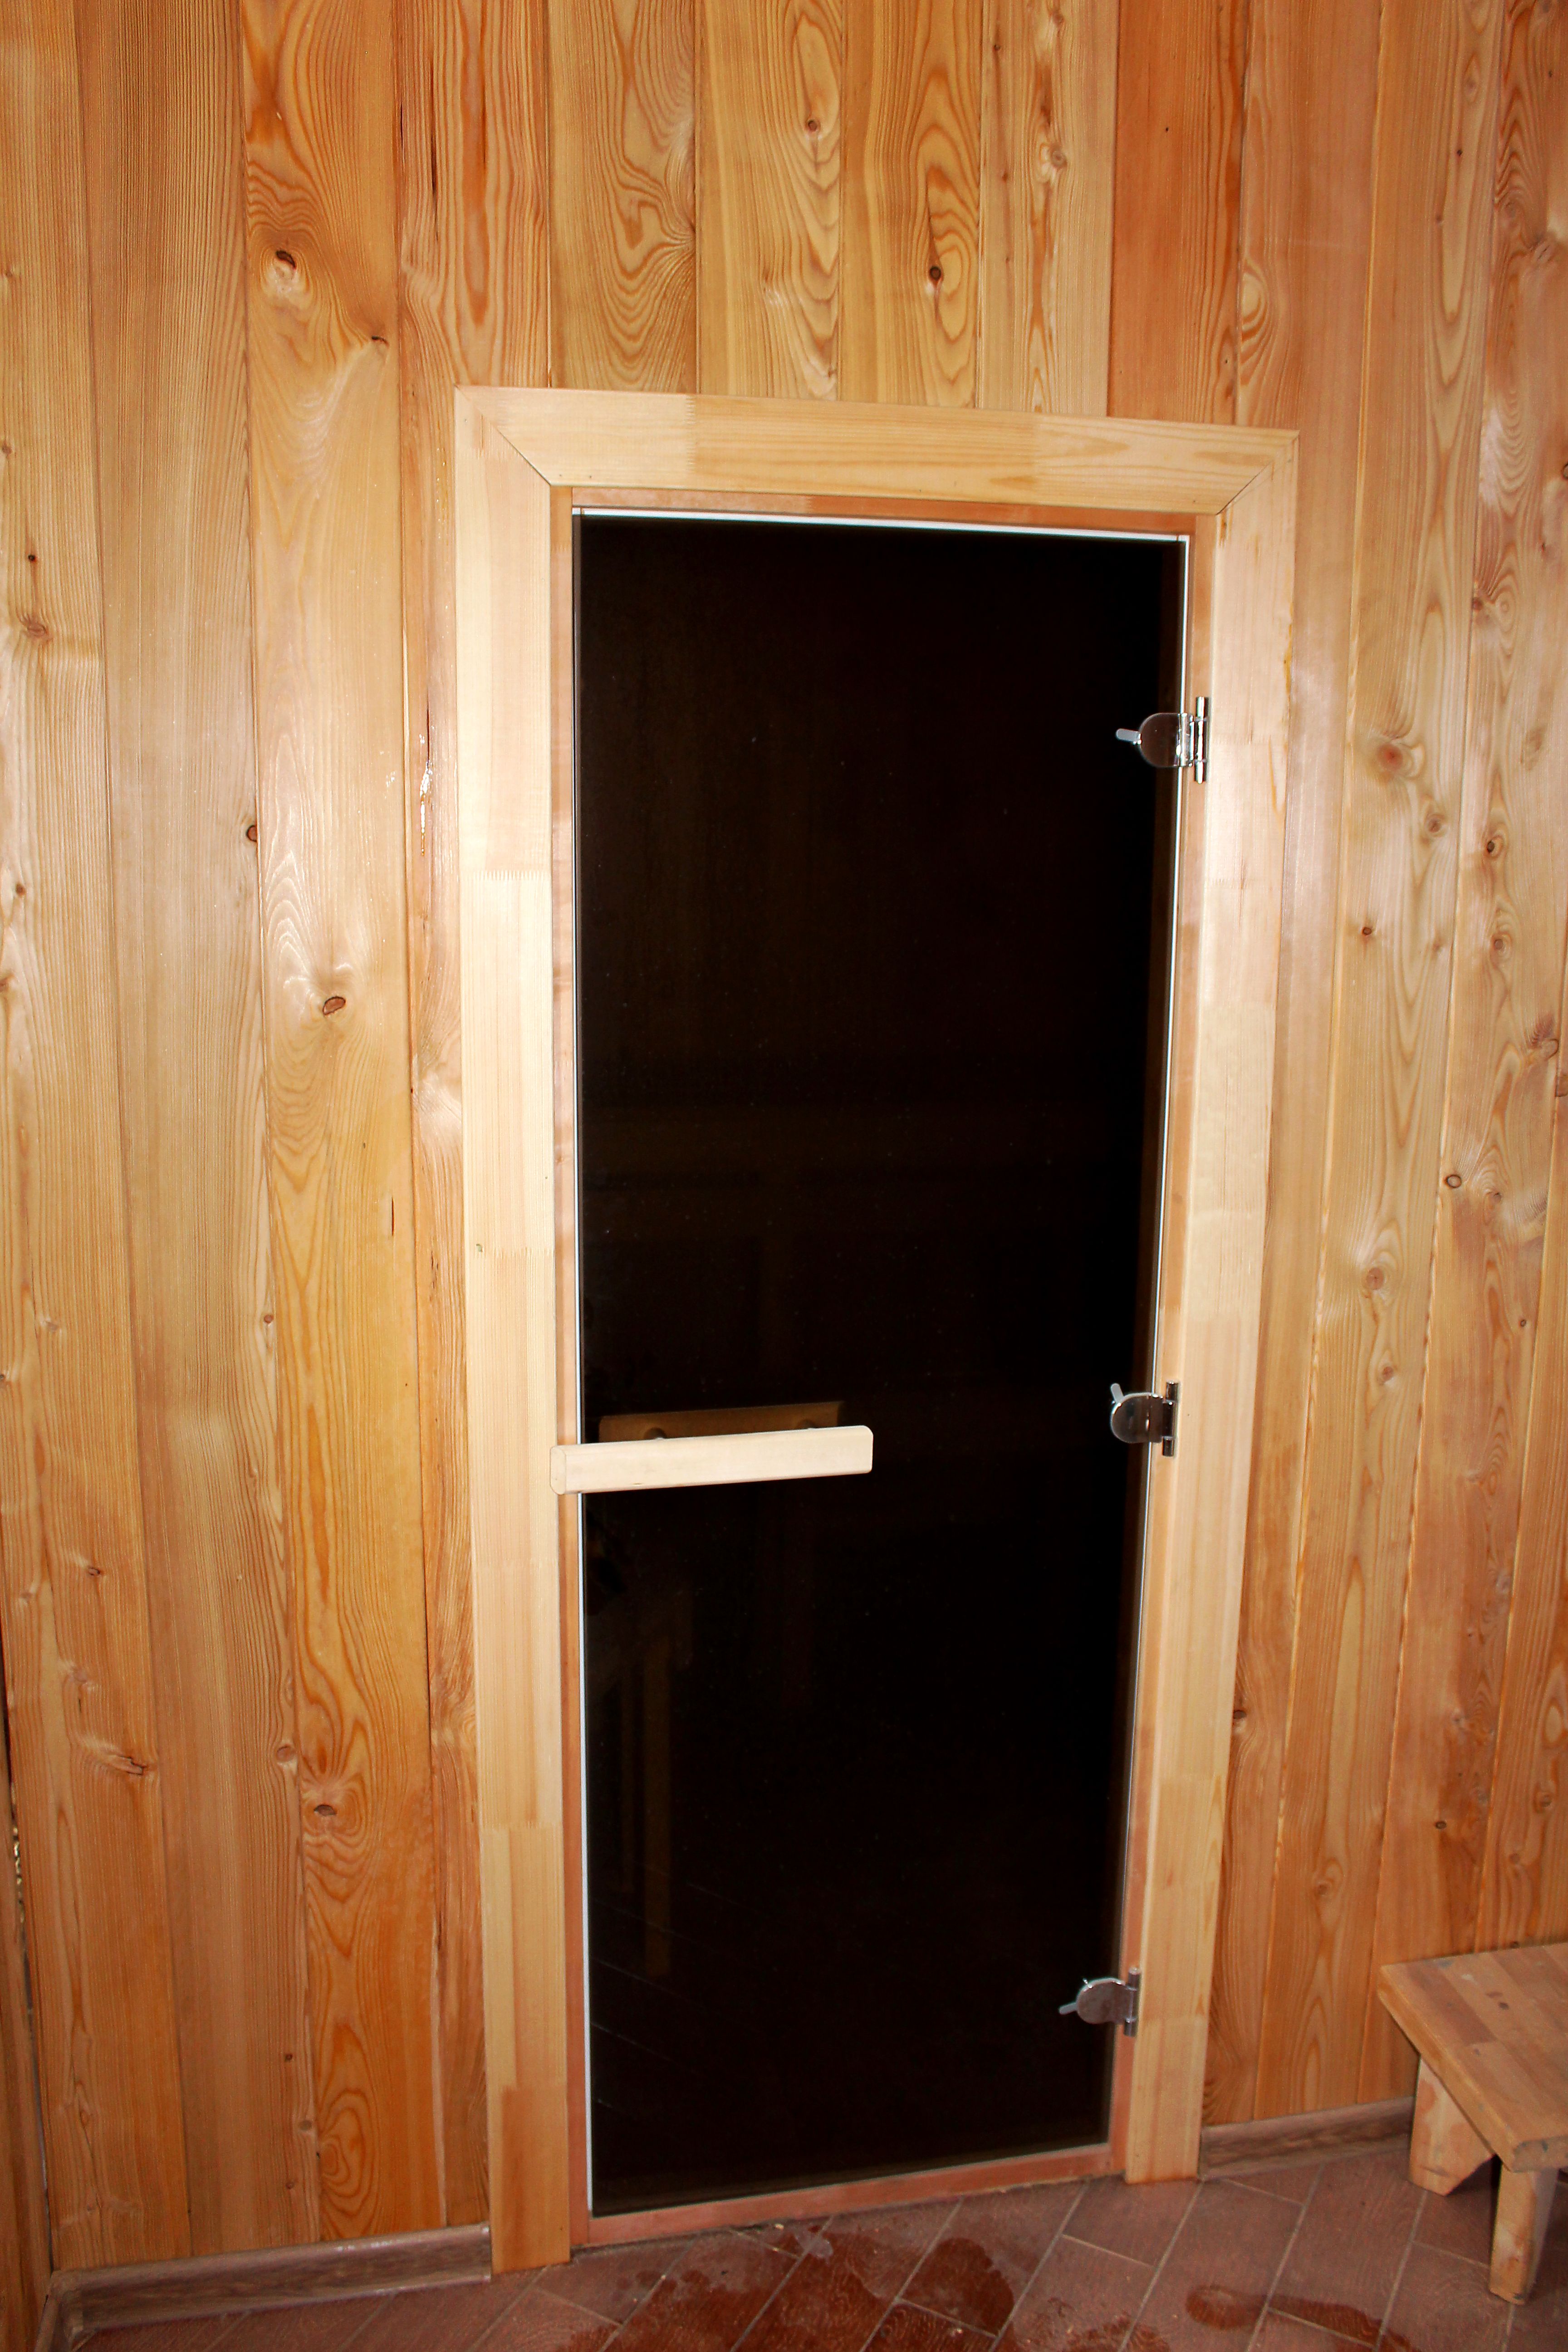 Установка дверей в бане, в том числе из сруба или бруса, инструкция как установить дверь из дерева, стекла, железа